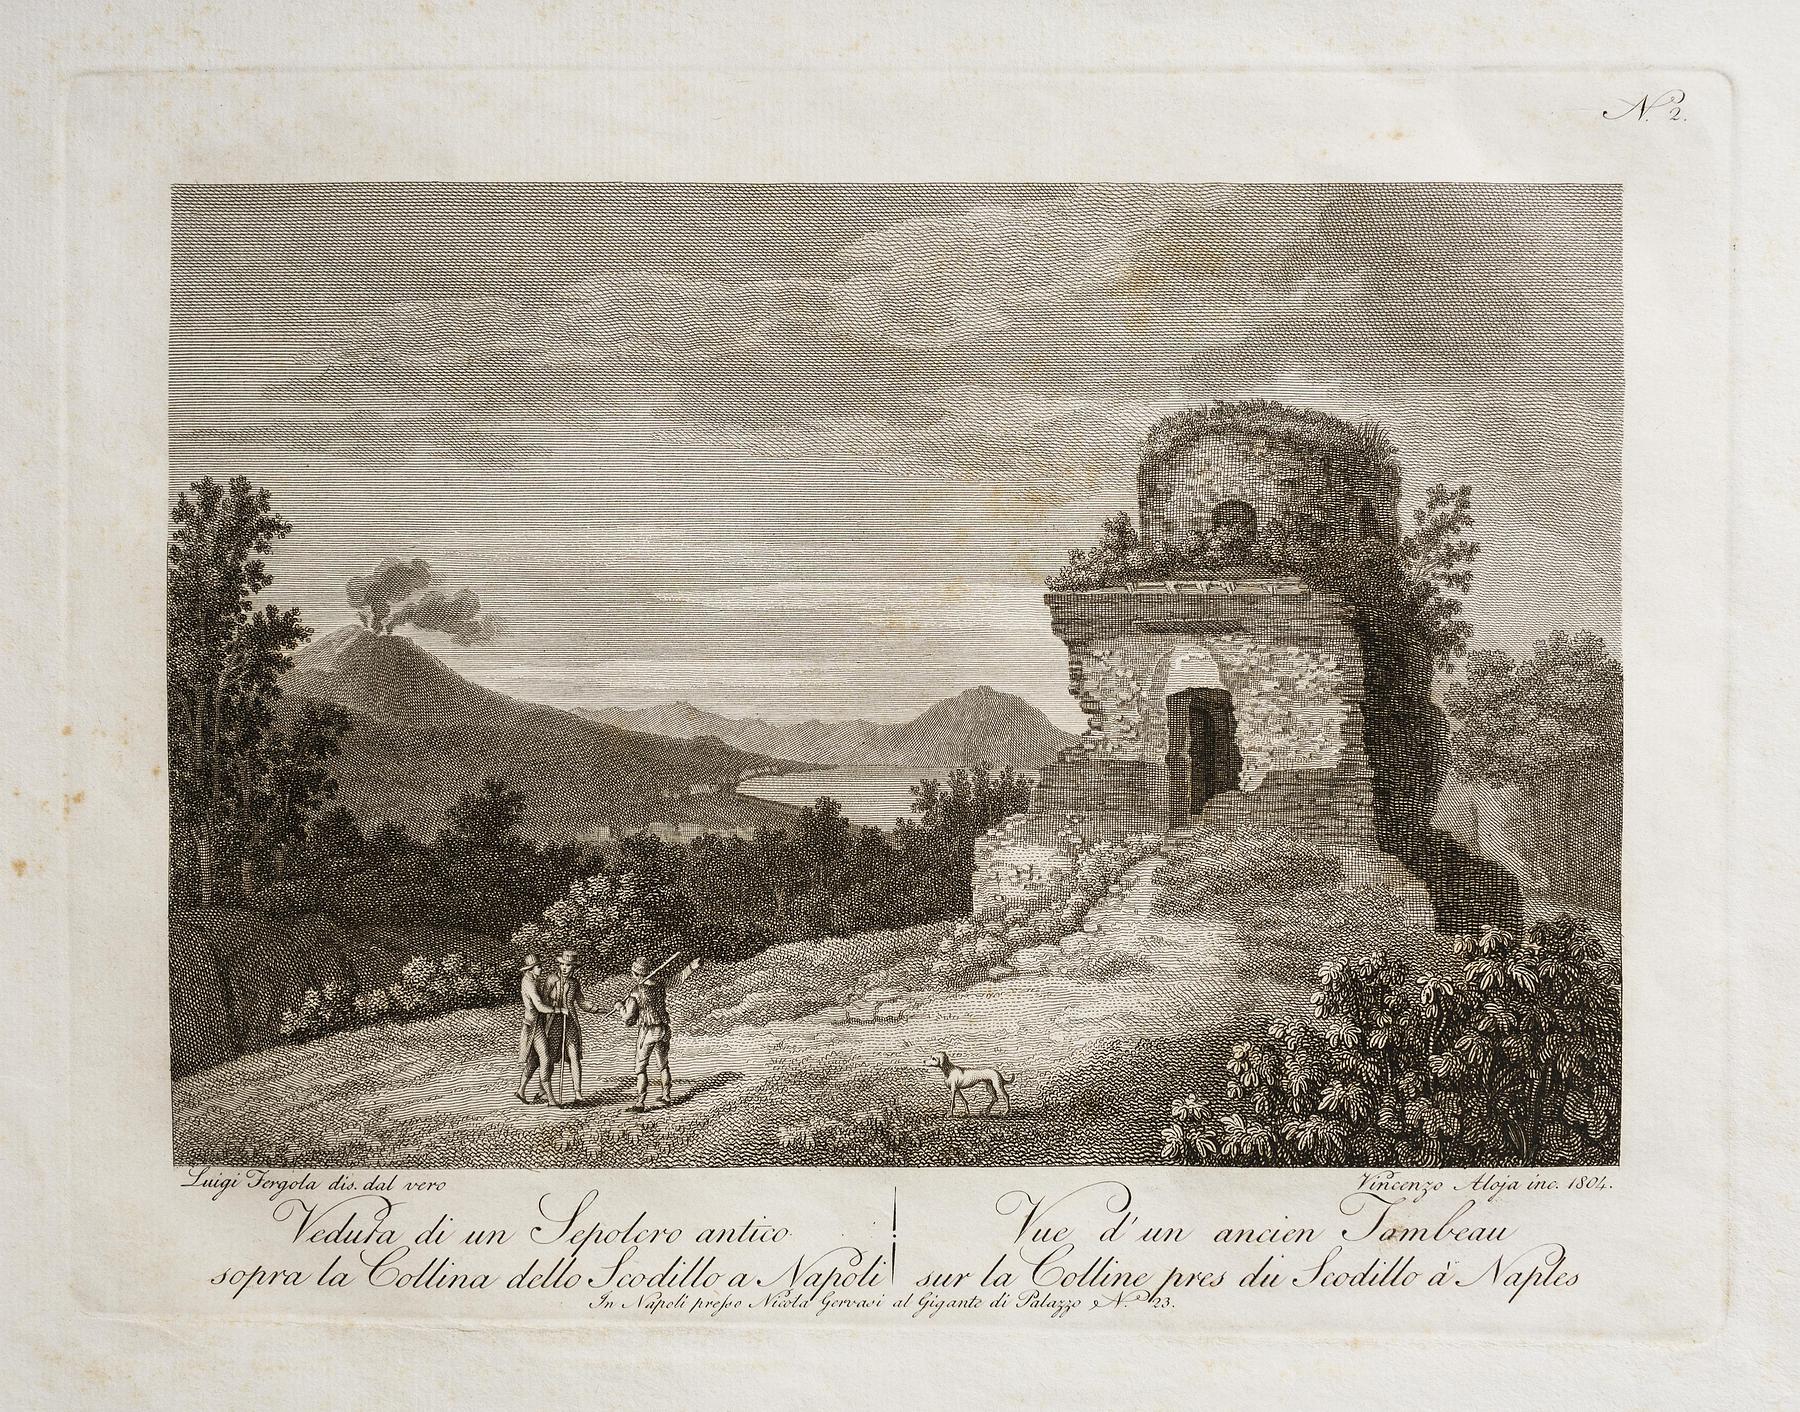 View of an ancient sepulcher above the Collina dello Scodillo in Naples, E333,2